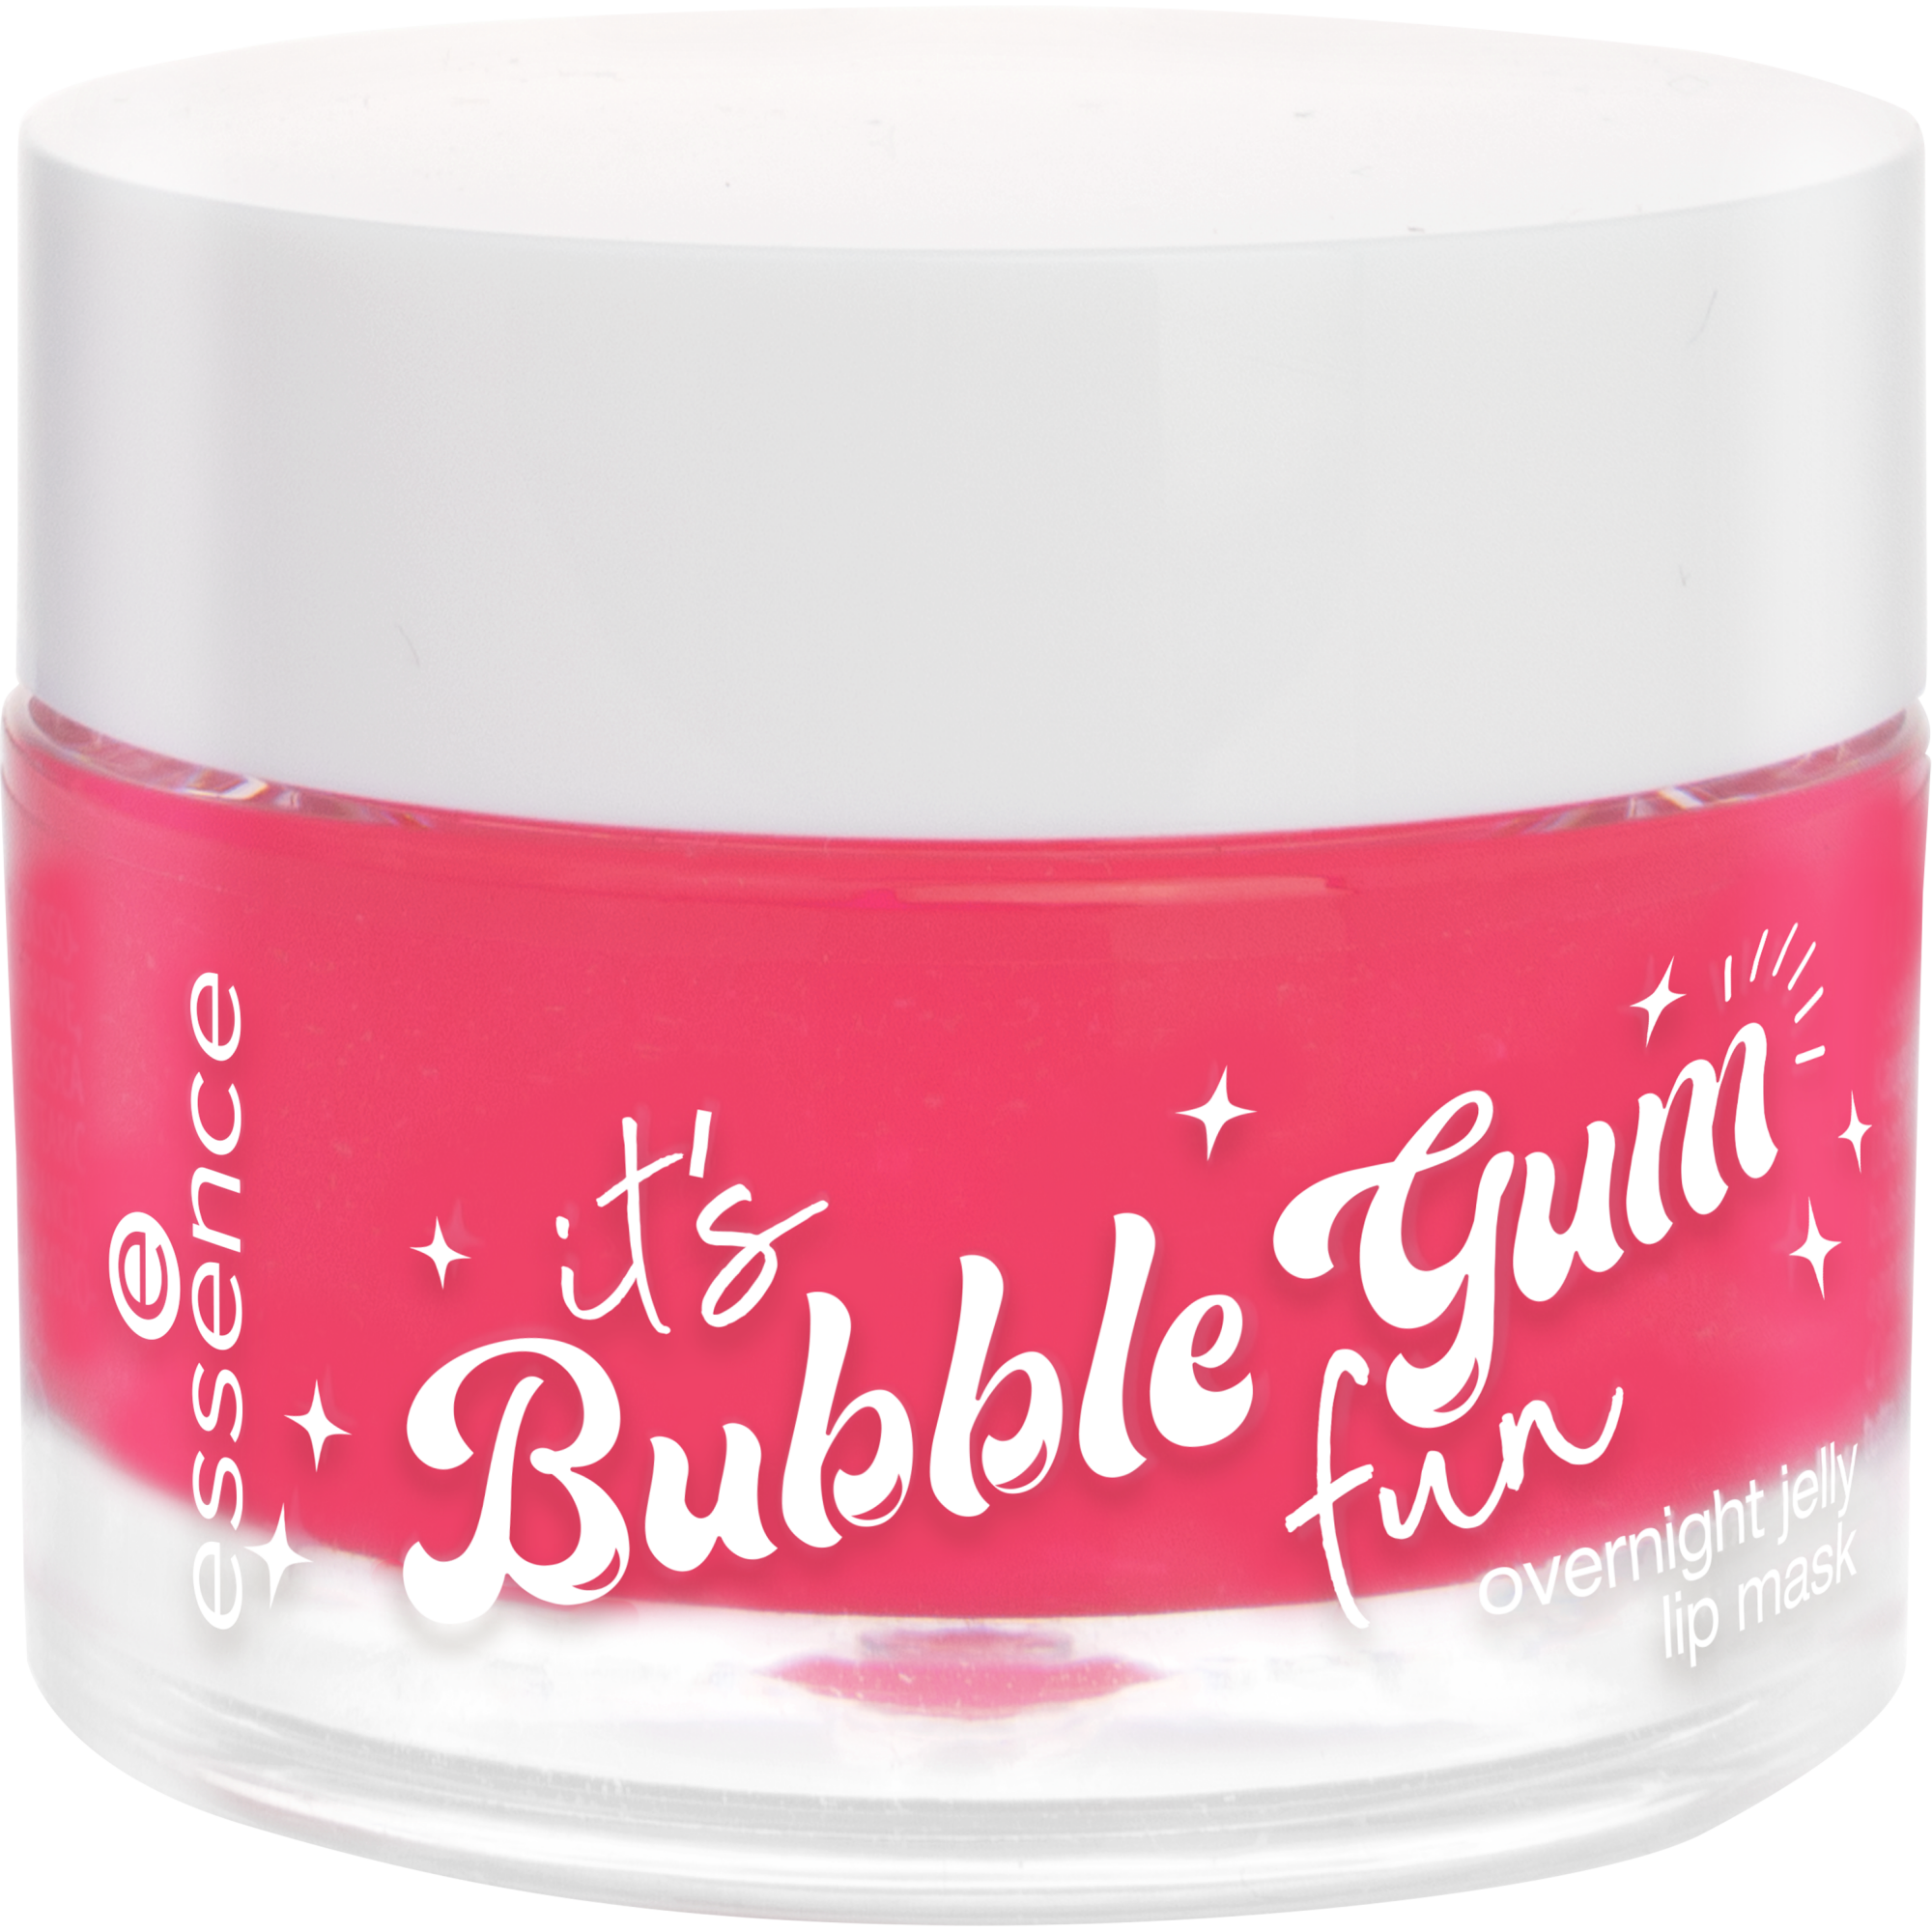 it's Bubble Gum fun mască de buze jelly pentru noapte